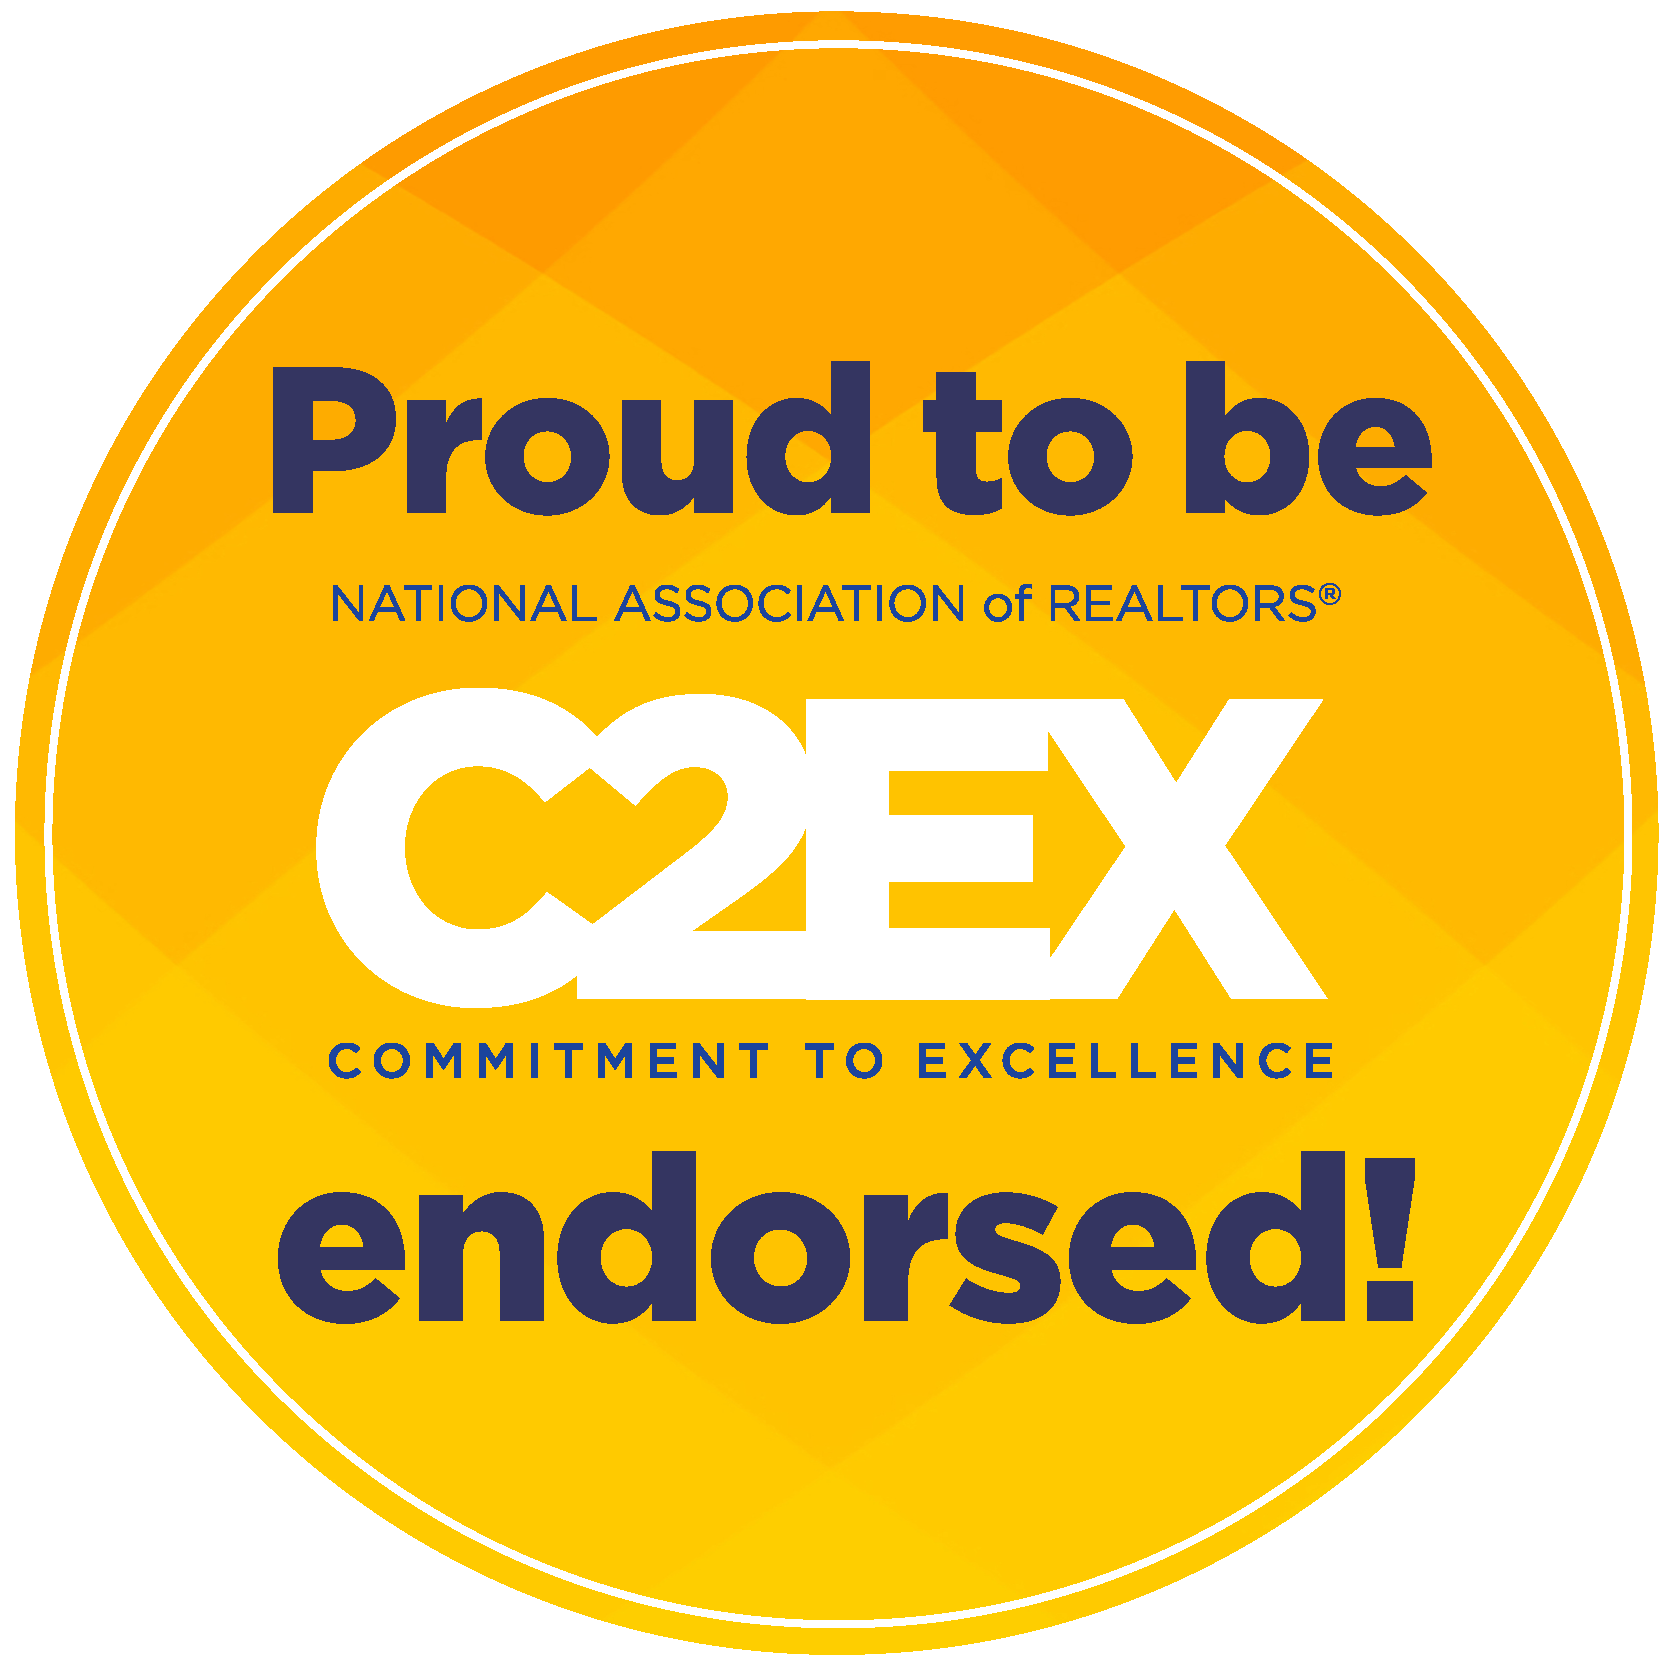 c2ex designation